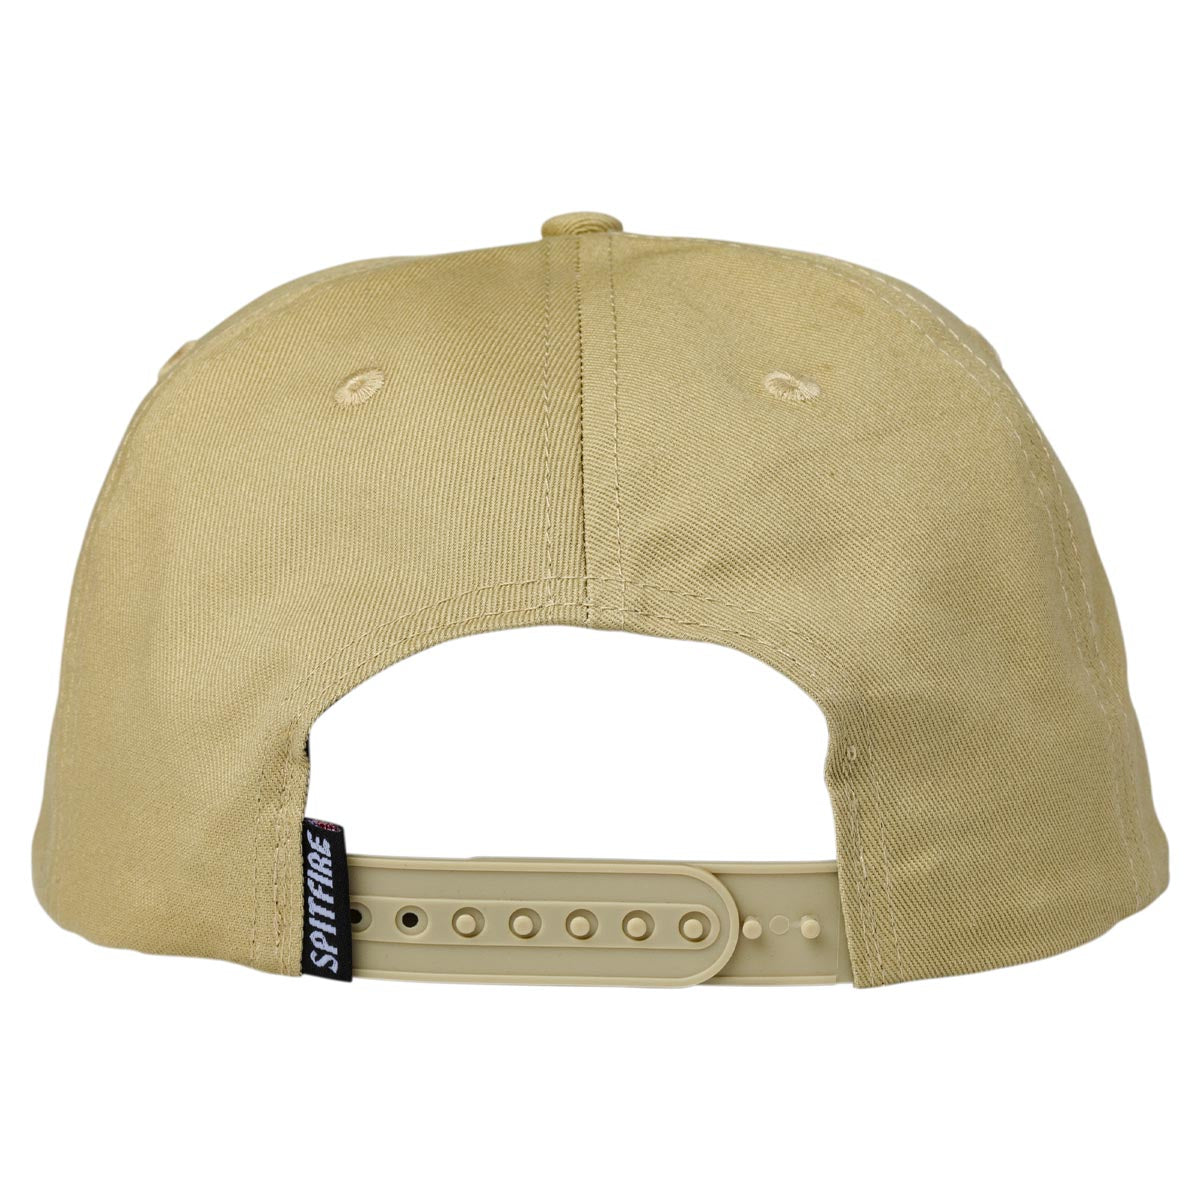 Spitfire Lil Bighead Fill Adjustable Snapback Hat (Tan/Red) - Apple Valley Emporium